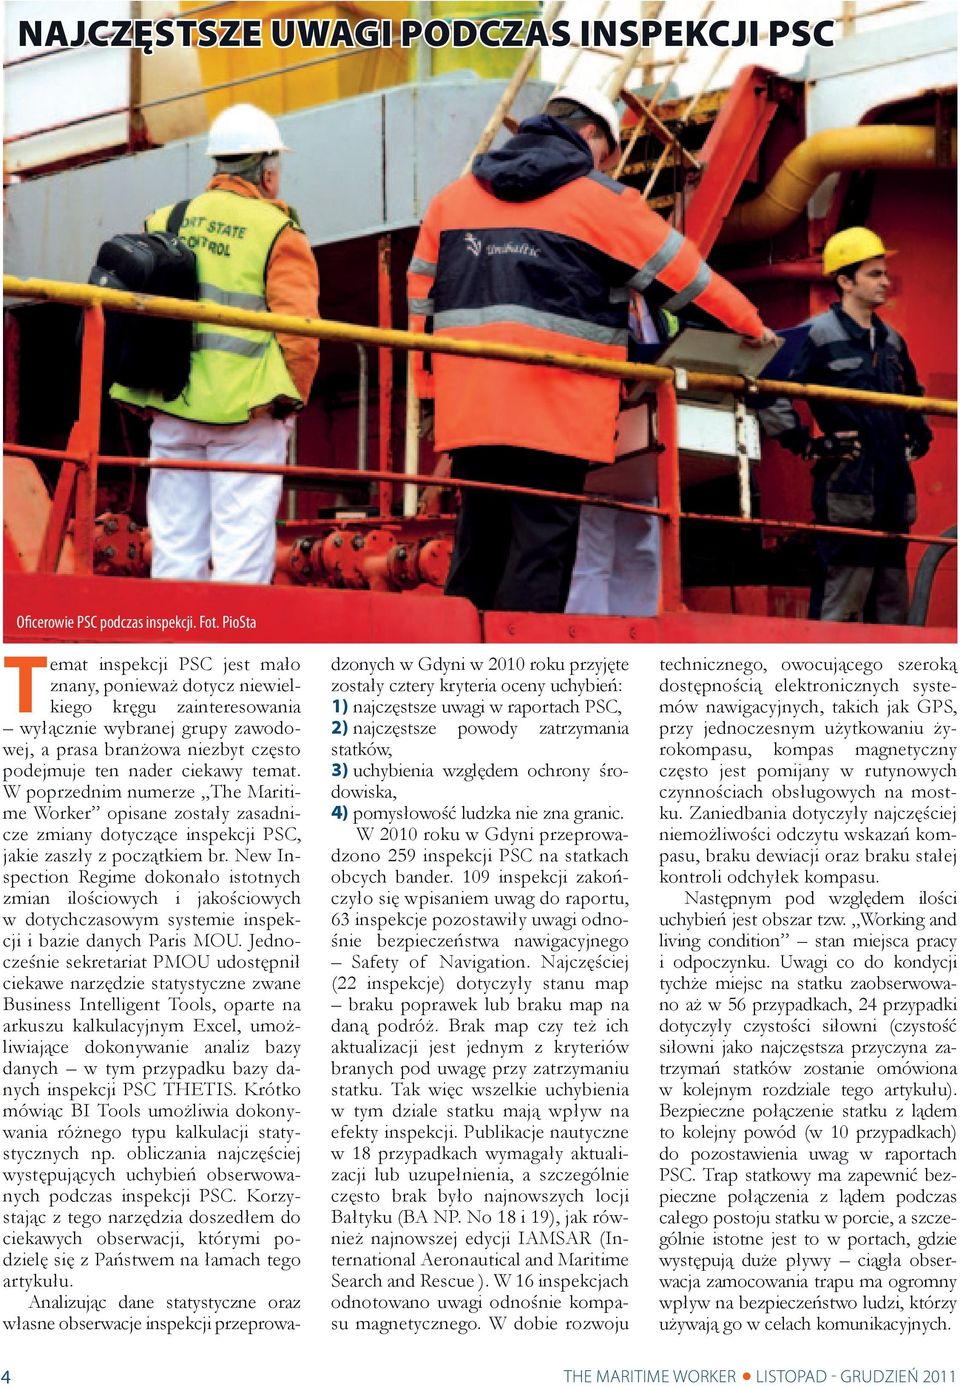 W poprzednim numerze The Maritime Worker opisane zostały zasadnicze zmiany dotyczące inspekcji PSC, jakie zaszły z początkiem br.